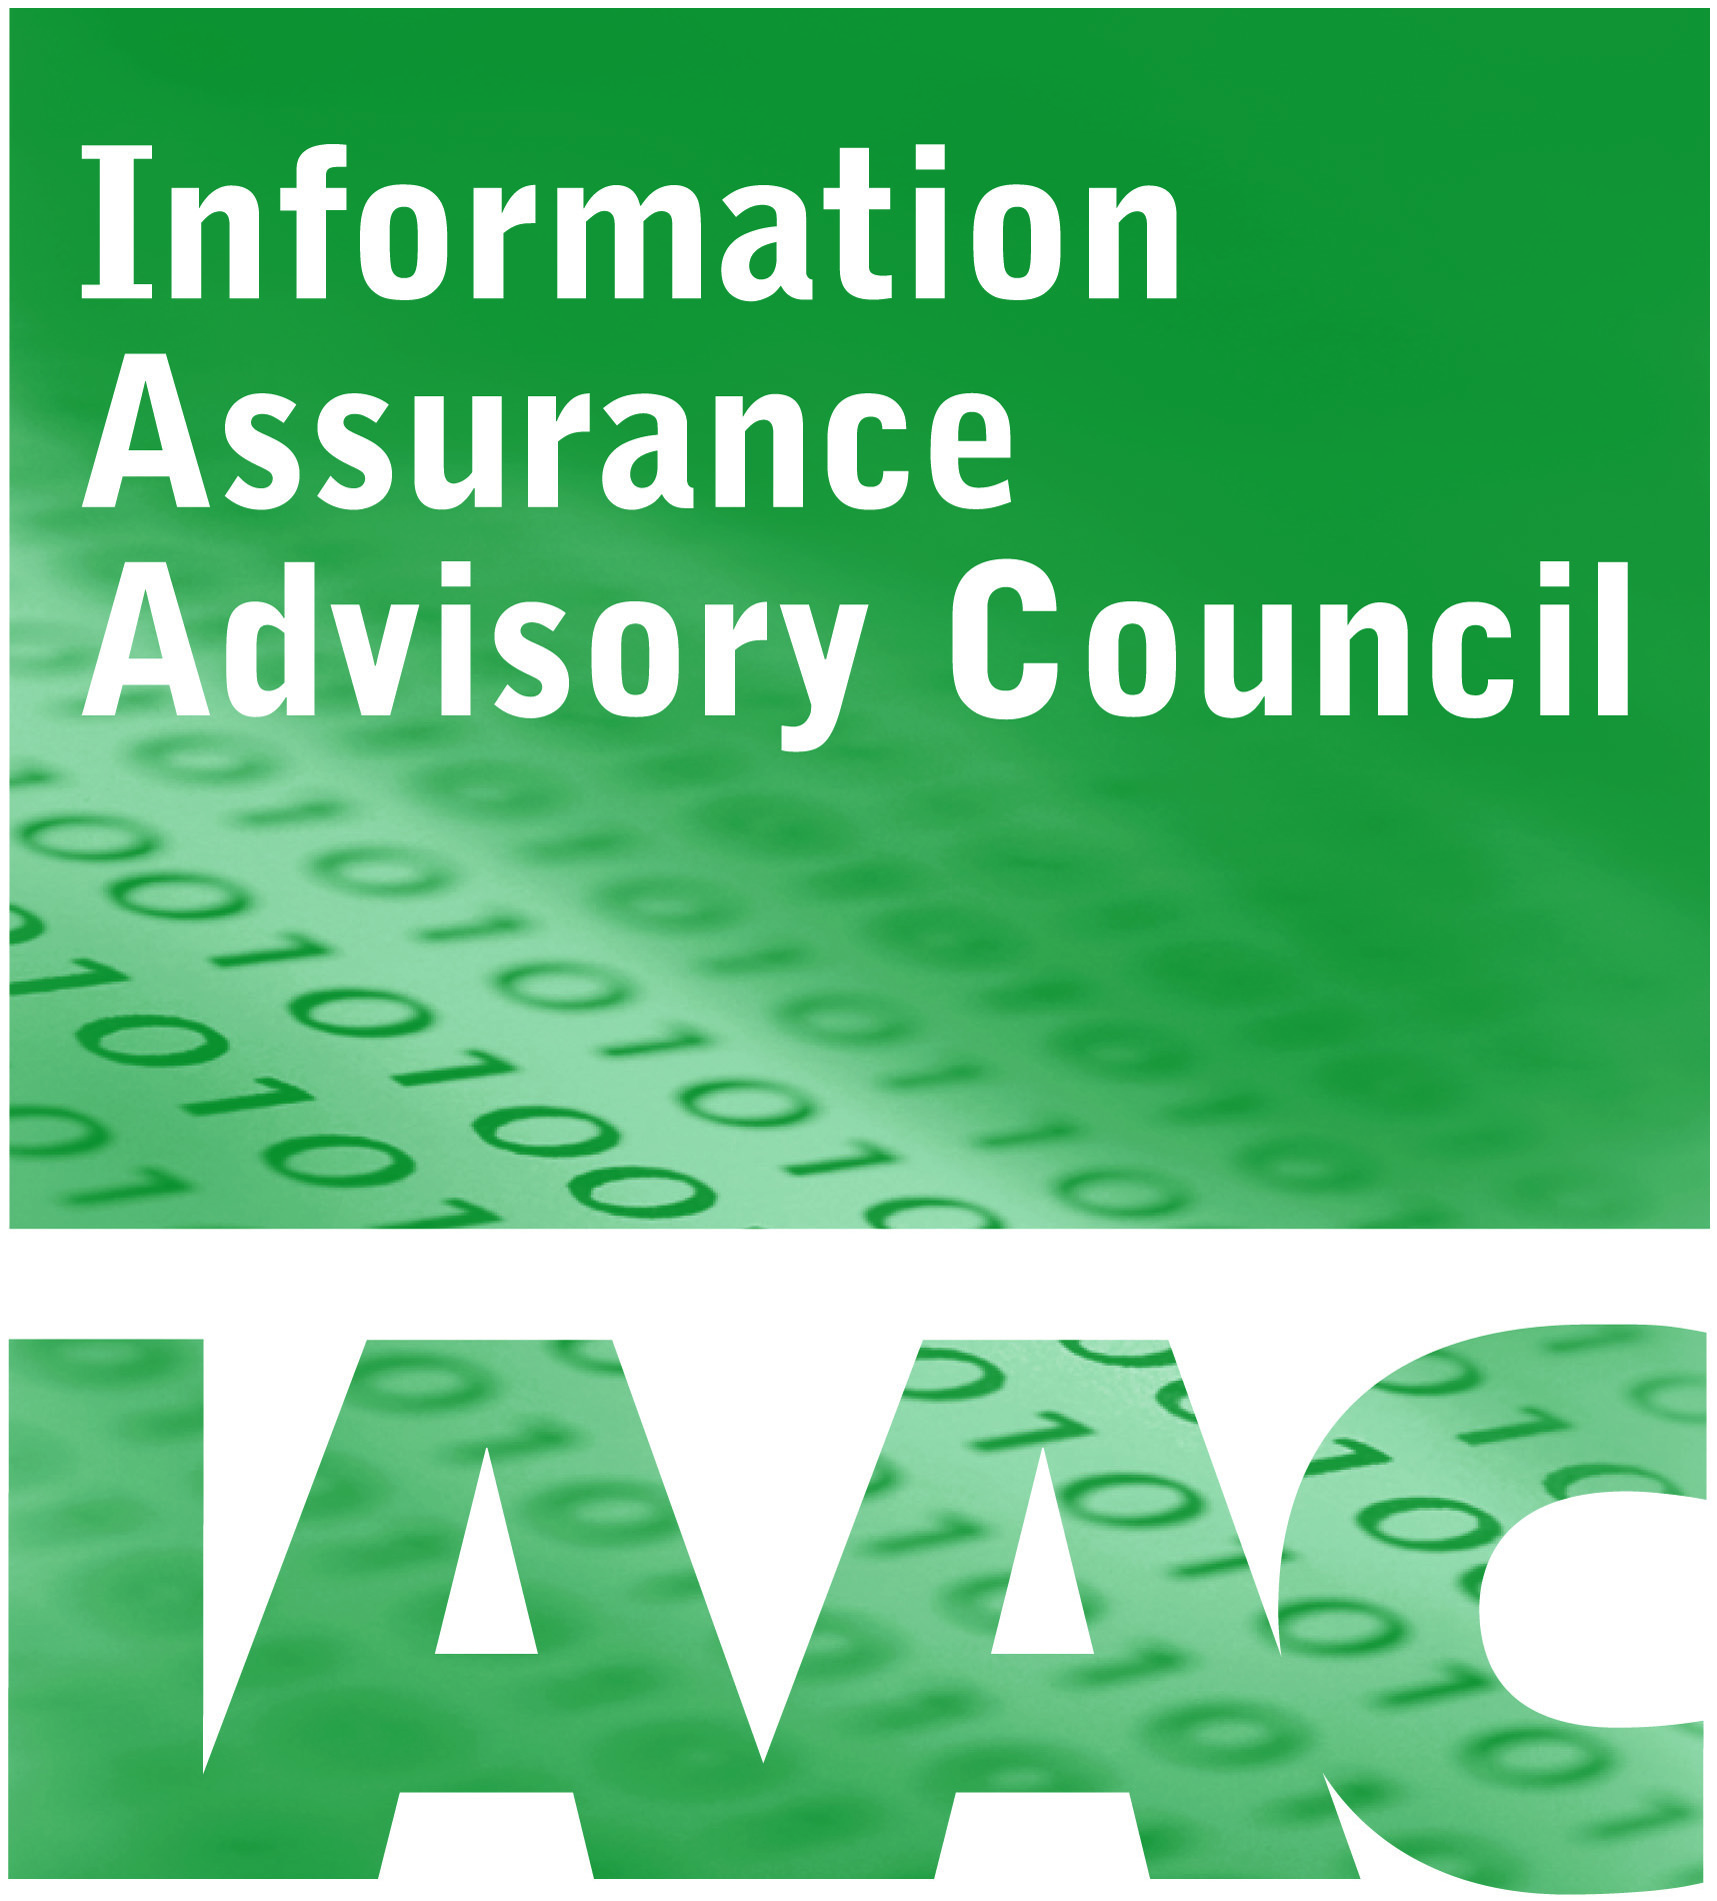 logo for IAAC